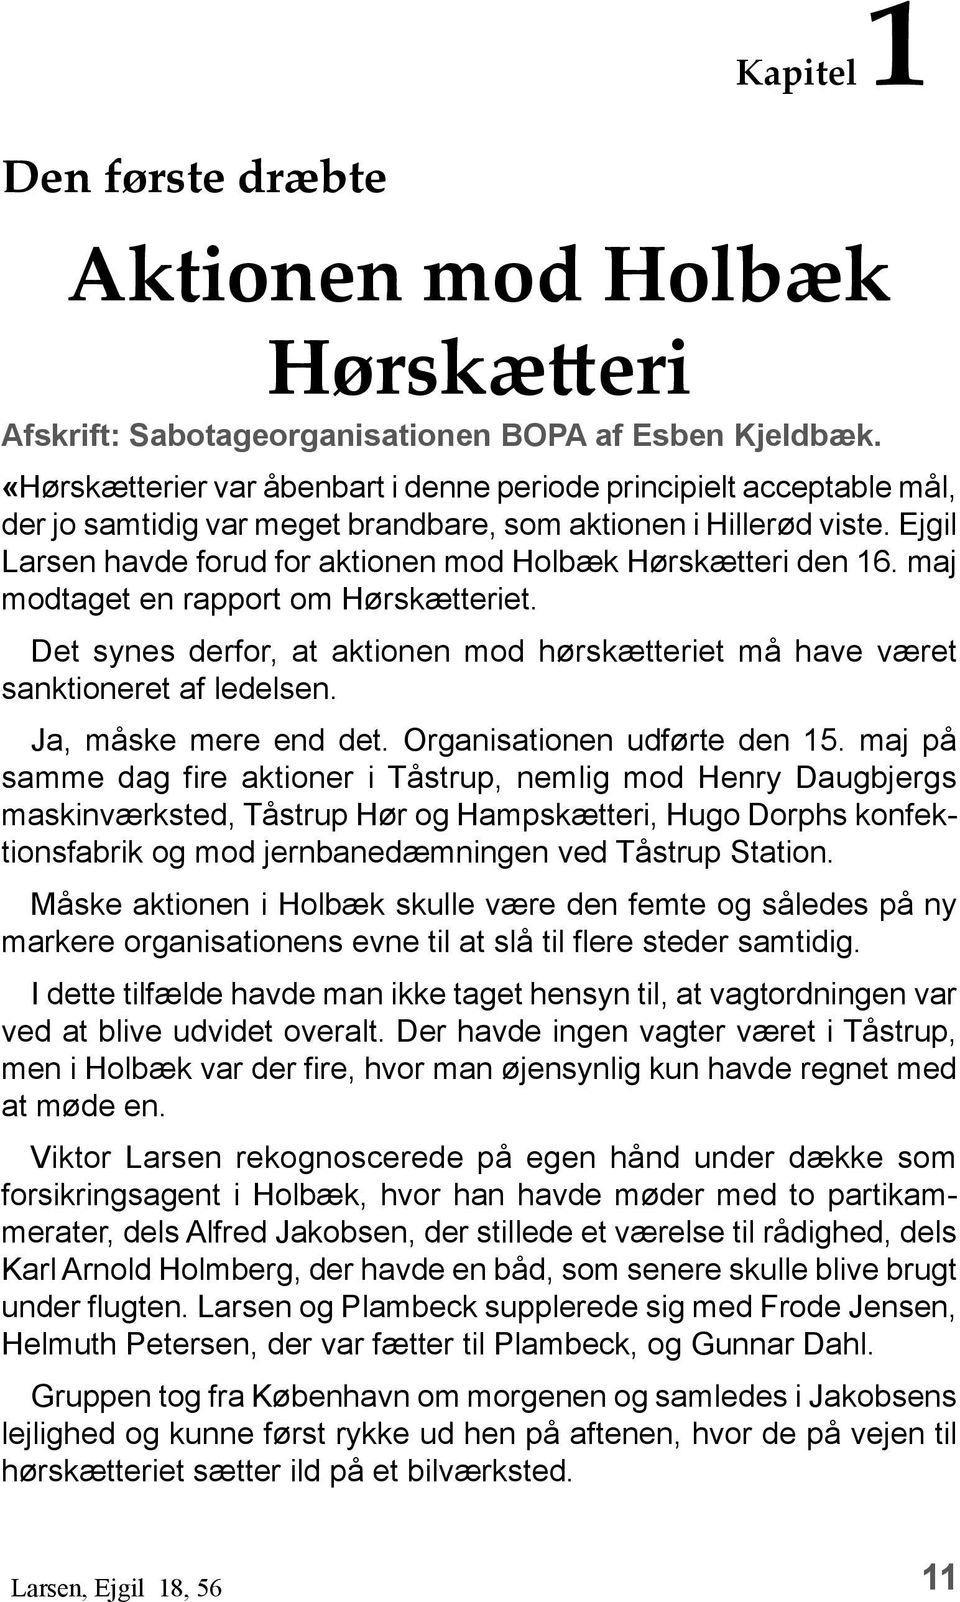 Ejgil Larsen havde forud for aktionen mod Holbæk Hørskætteri den 16. maj modtaget en rapport om Hørskætteriet. Det synes derfor, at aktionen mod hørskætteriet må have været sanktioneret af ledelsen.